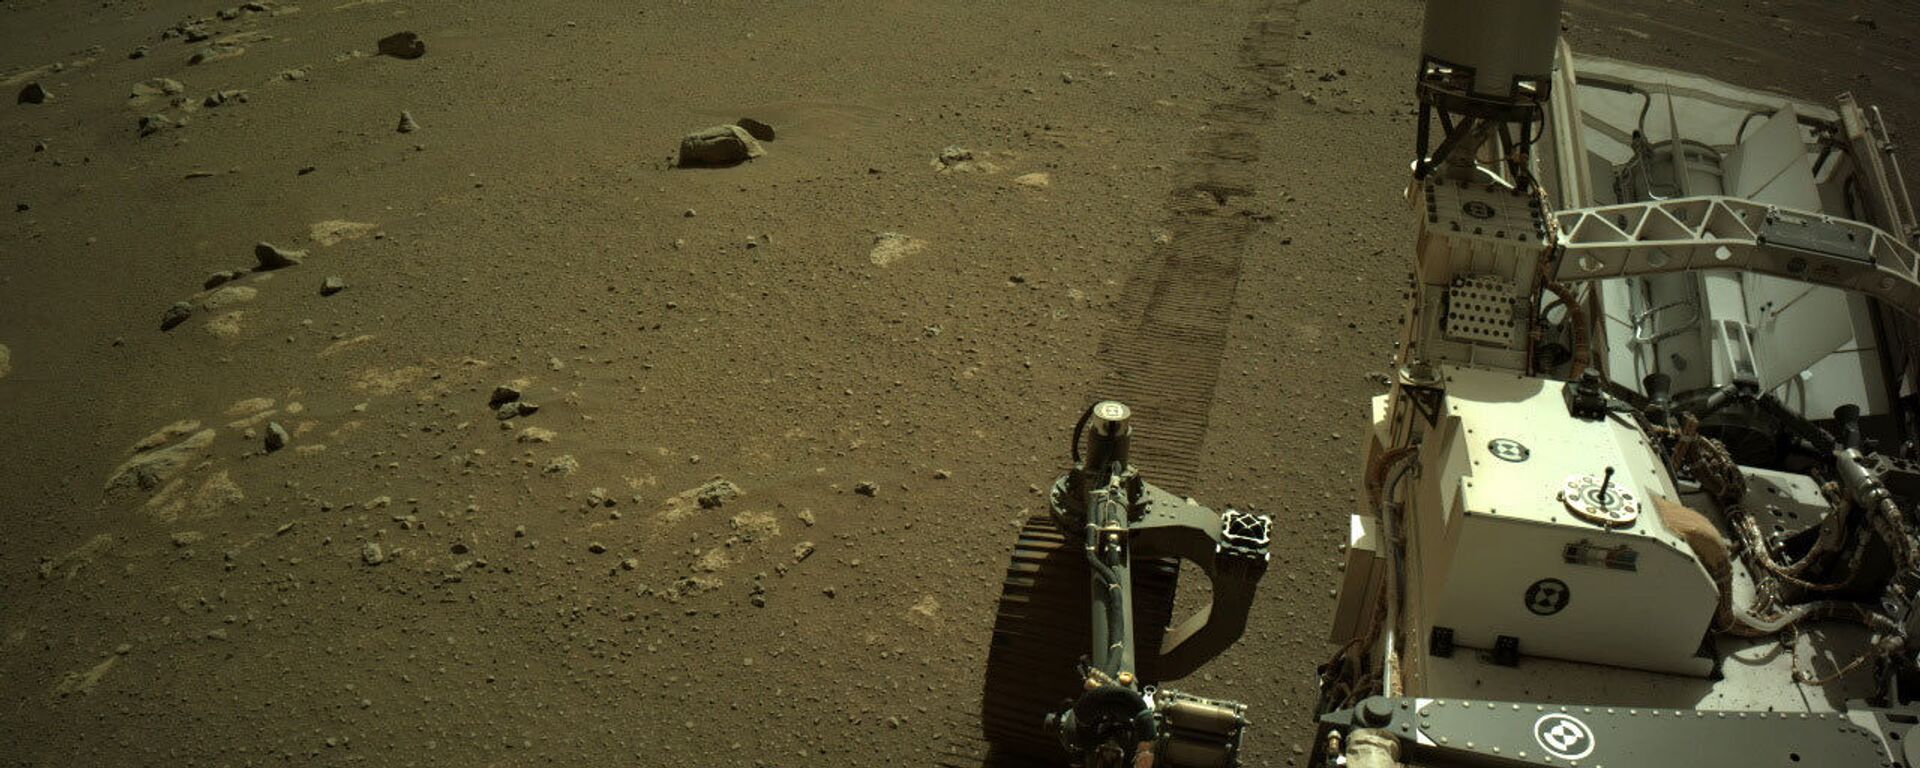 Rover Istrajnost na Marsu - Sputnik Srbija, 1920, 18.03.2021